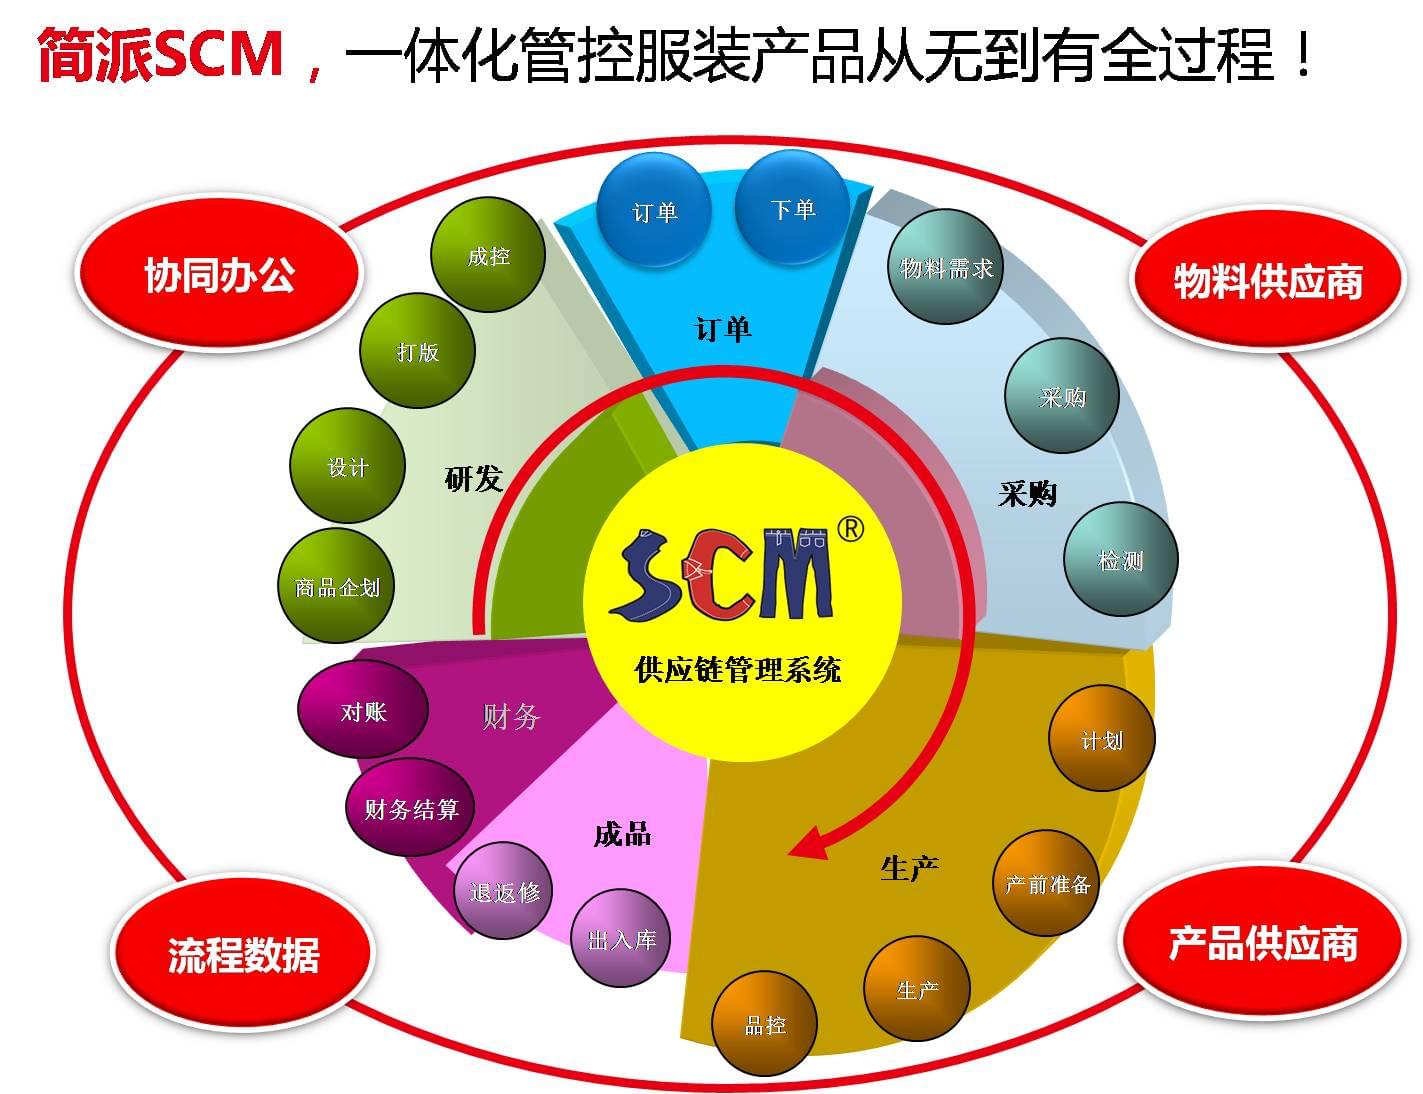 简派SCM,服装供应链管理系统,广州简派软件科技有限公司